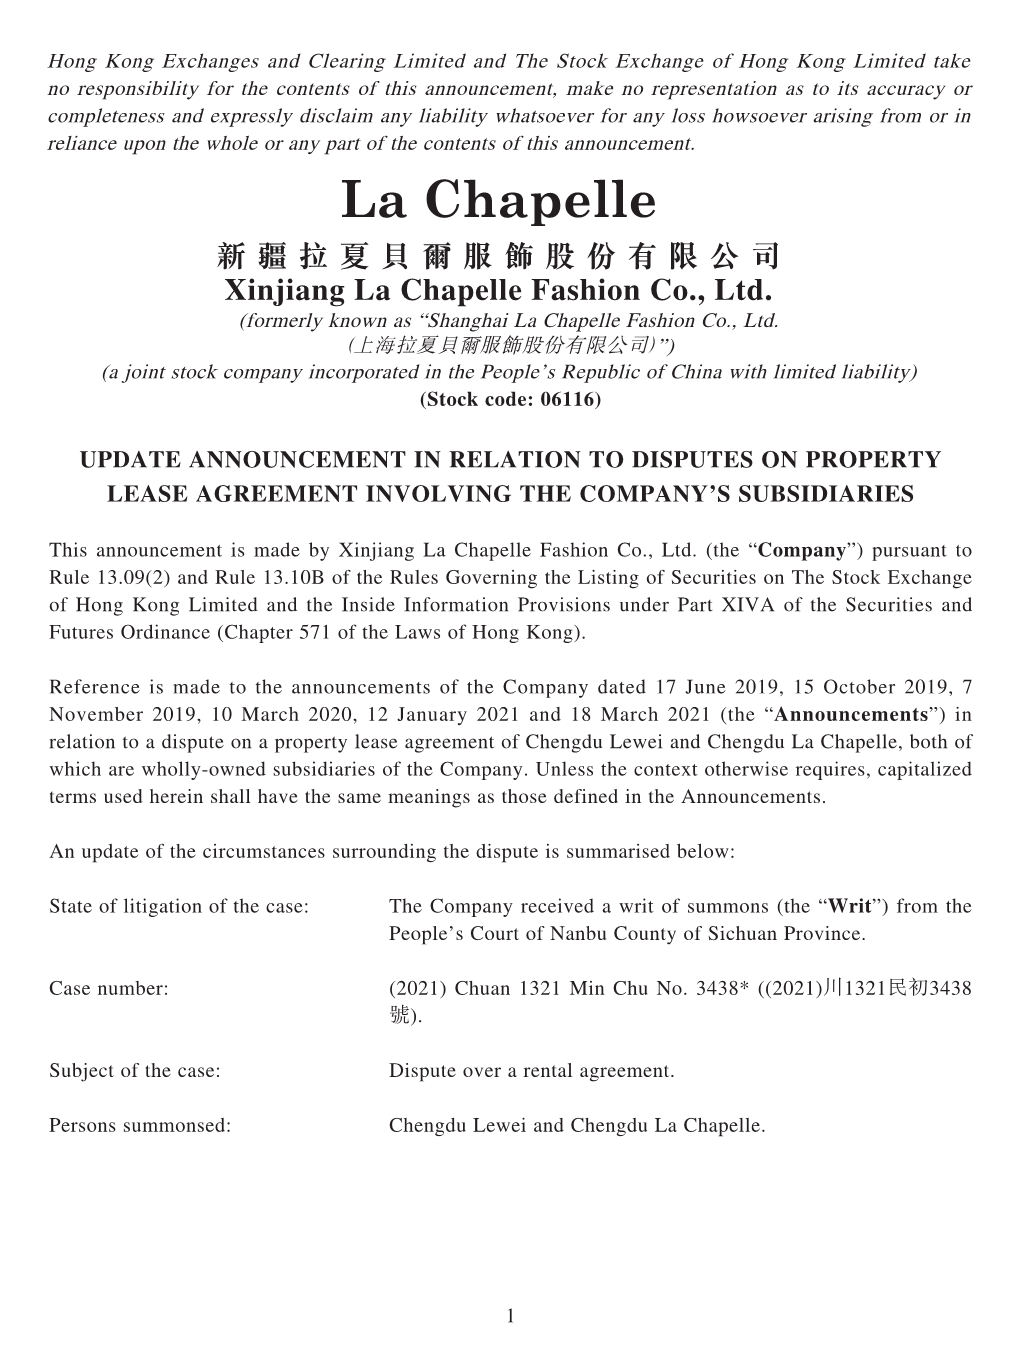 新疆拉夏貝爾服飾股份有限公司 Xinjiang La Chapelle Fashion Co., Ltd